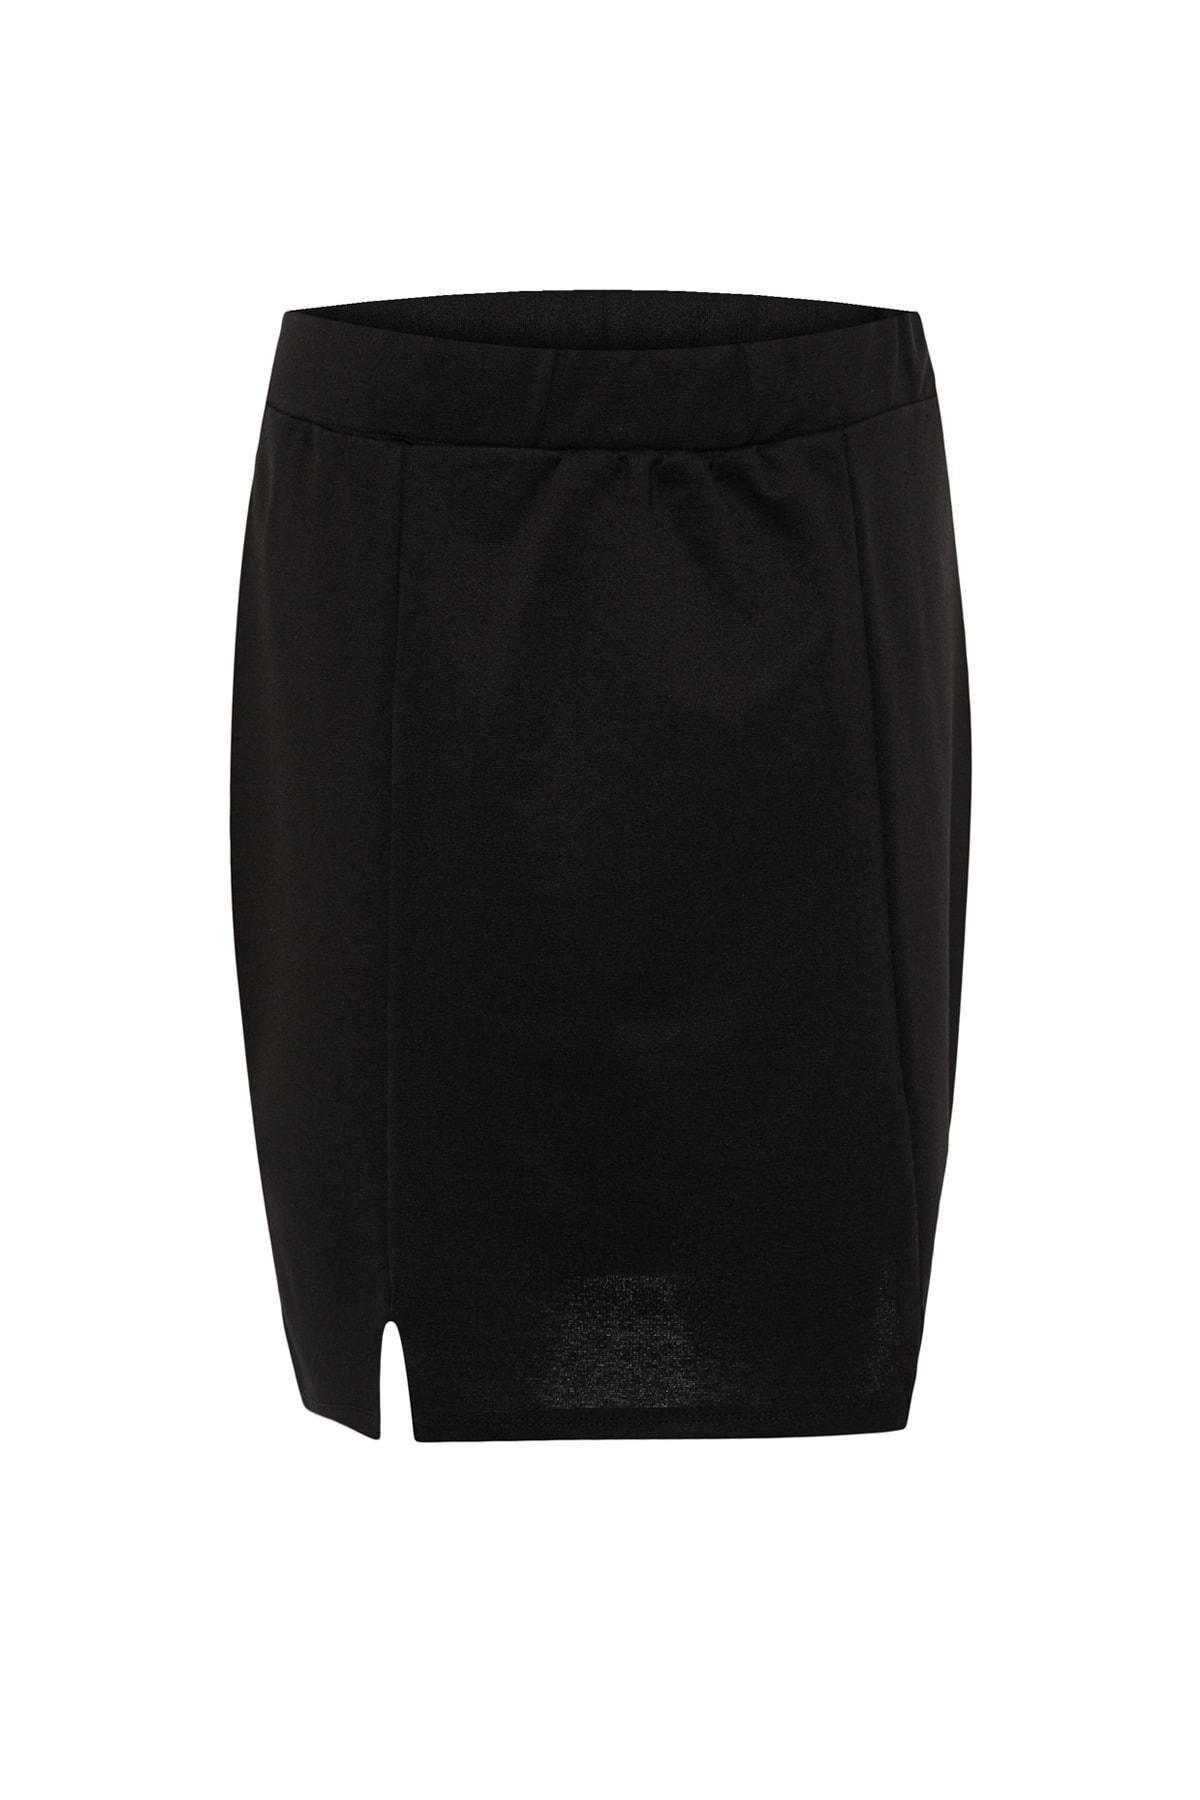 Trendyol - Black Mini Plus Size Pencil Skirt